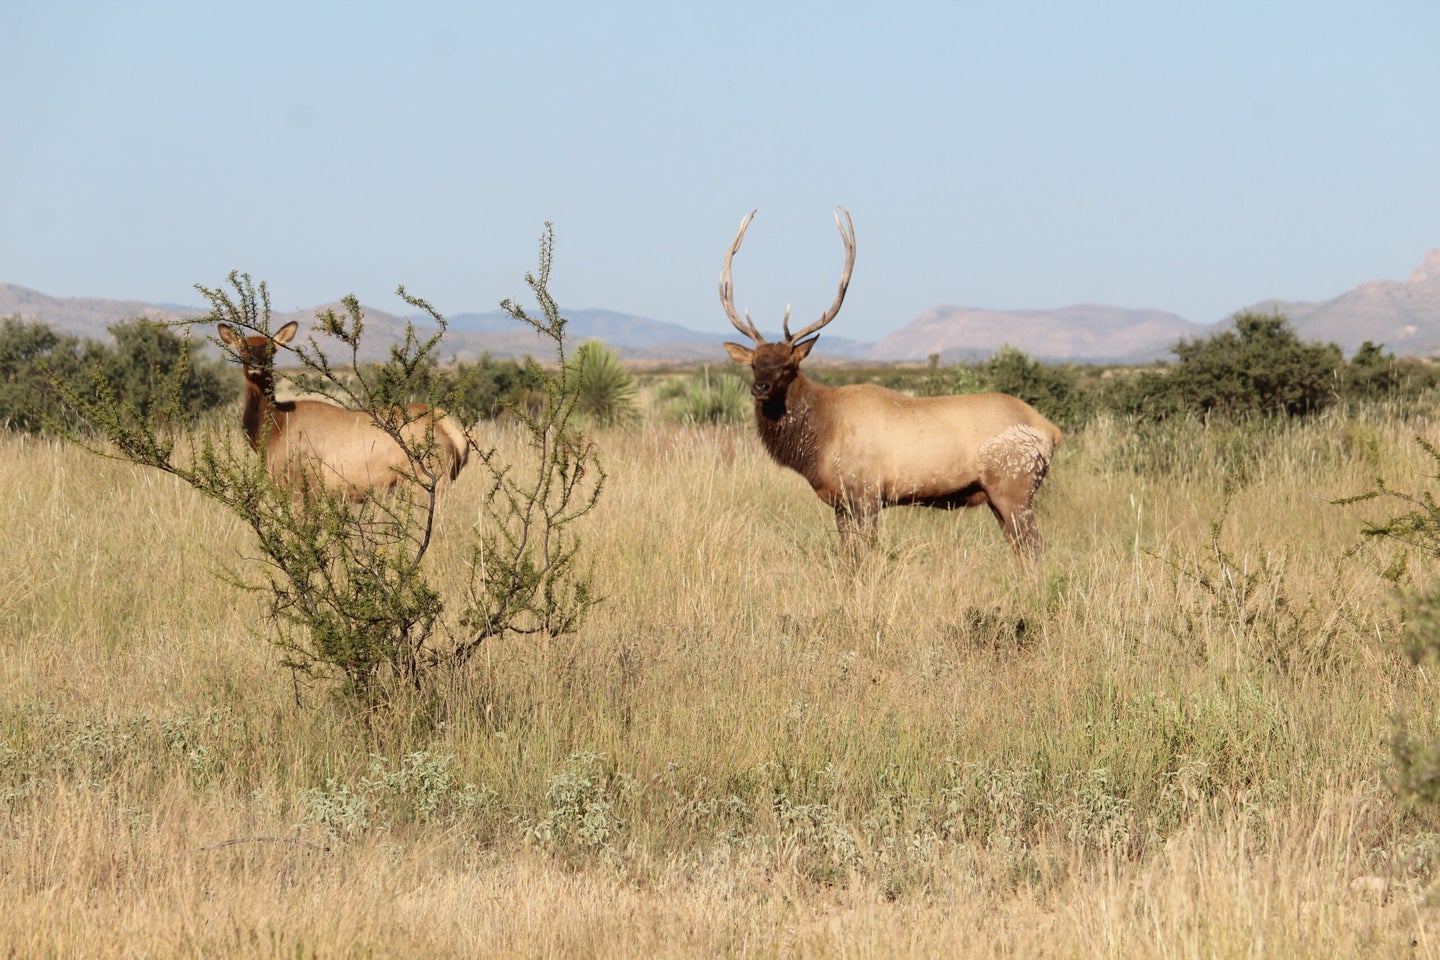 A bull elk standing in a field